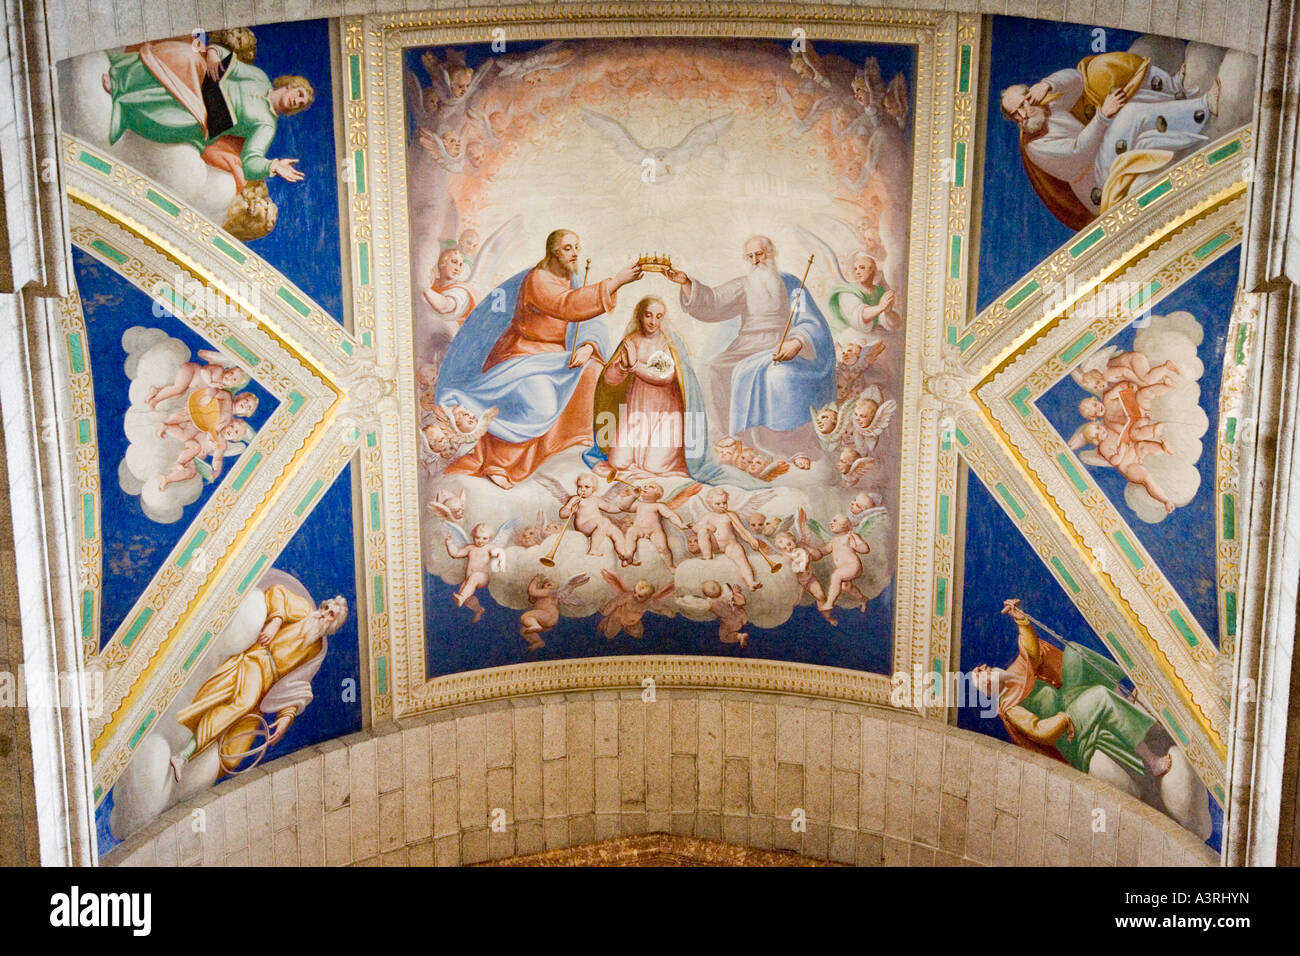 Pittura ad affresco a El Escorial basilica da pittore italiano Cambiaso Foto Stock